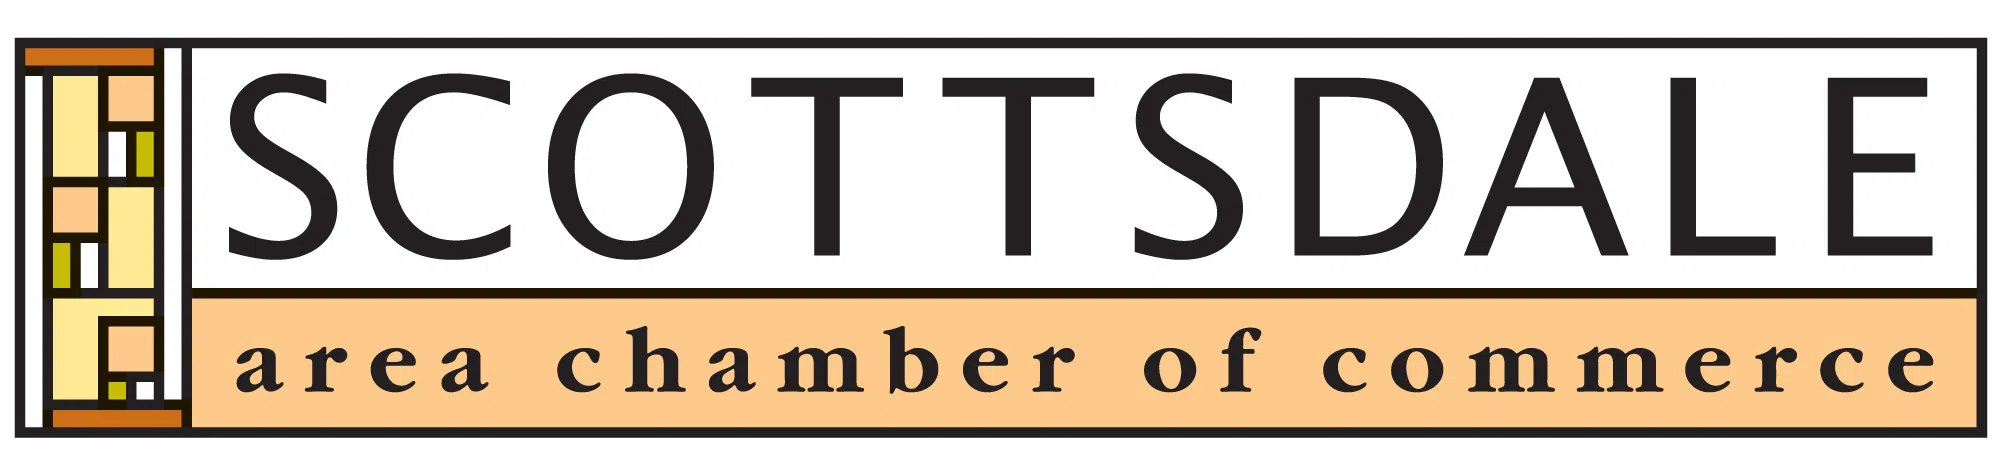 Scottsdale Chamber of Commerce Badge